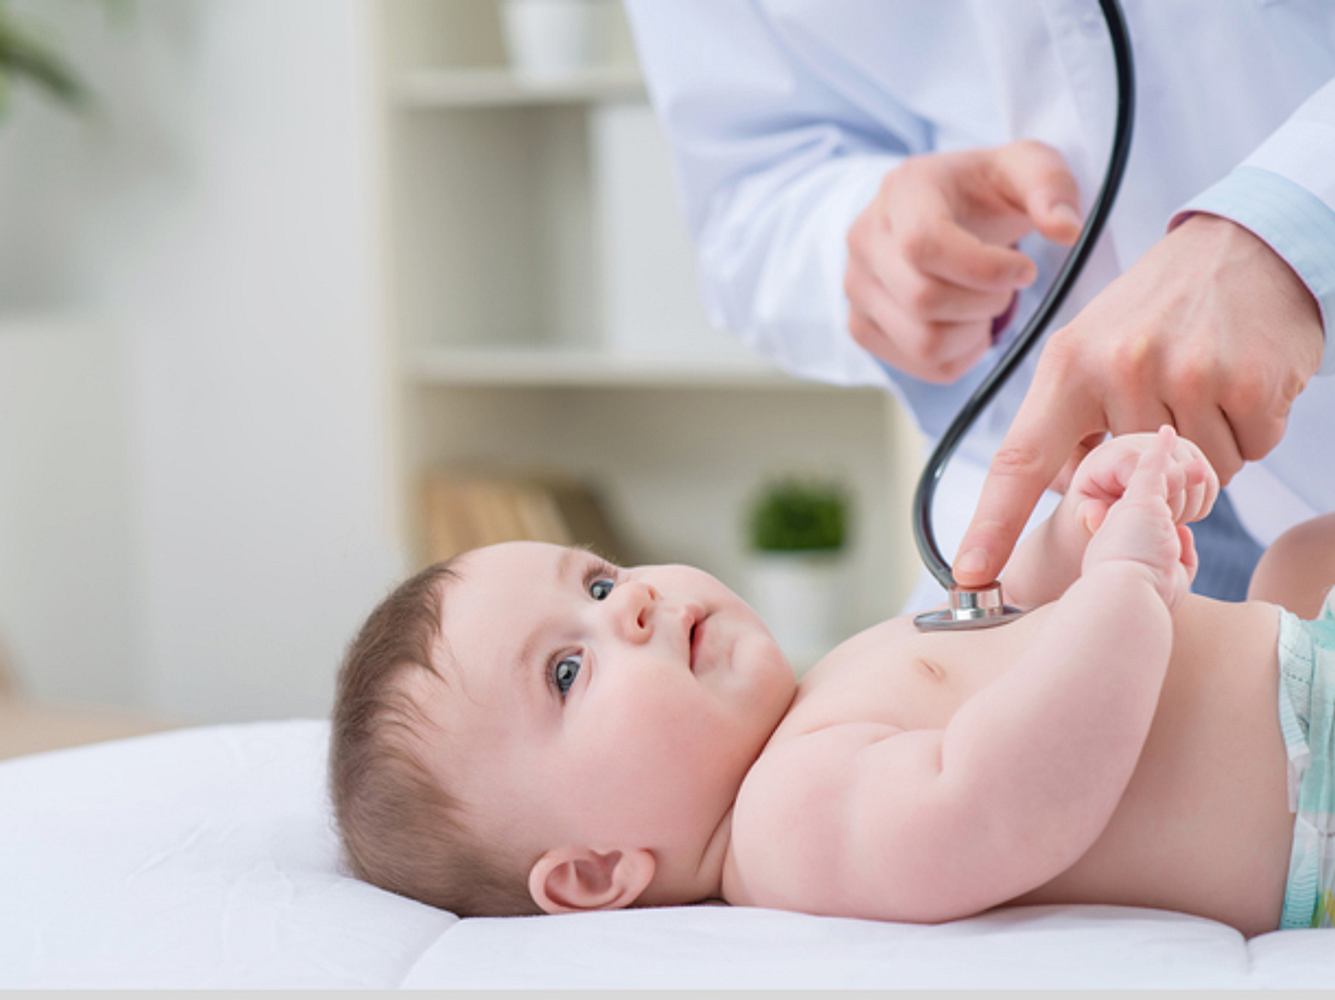 Immer mehr Babys leiden an an Fettleber, Bluthochdruck oder Herzproblemen